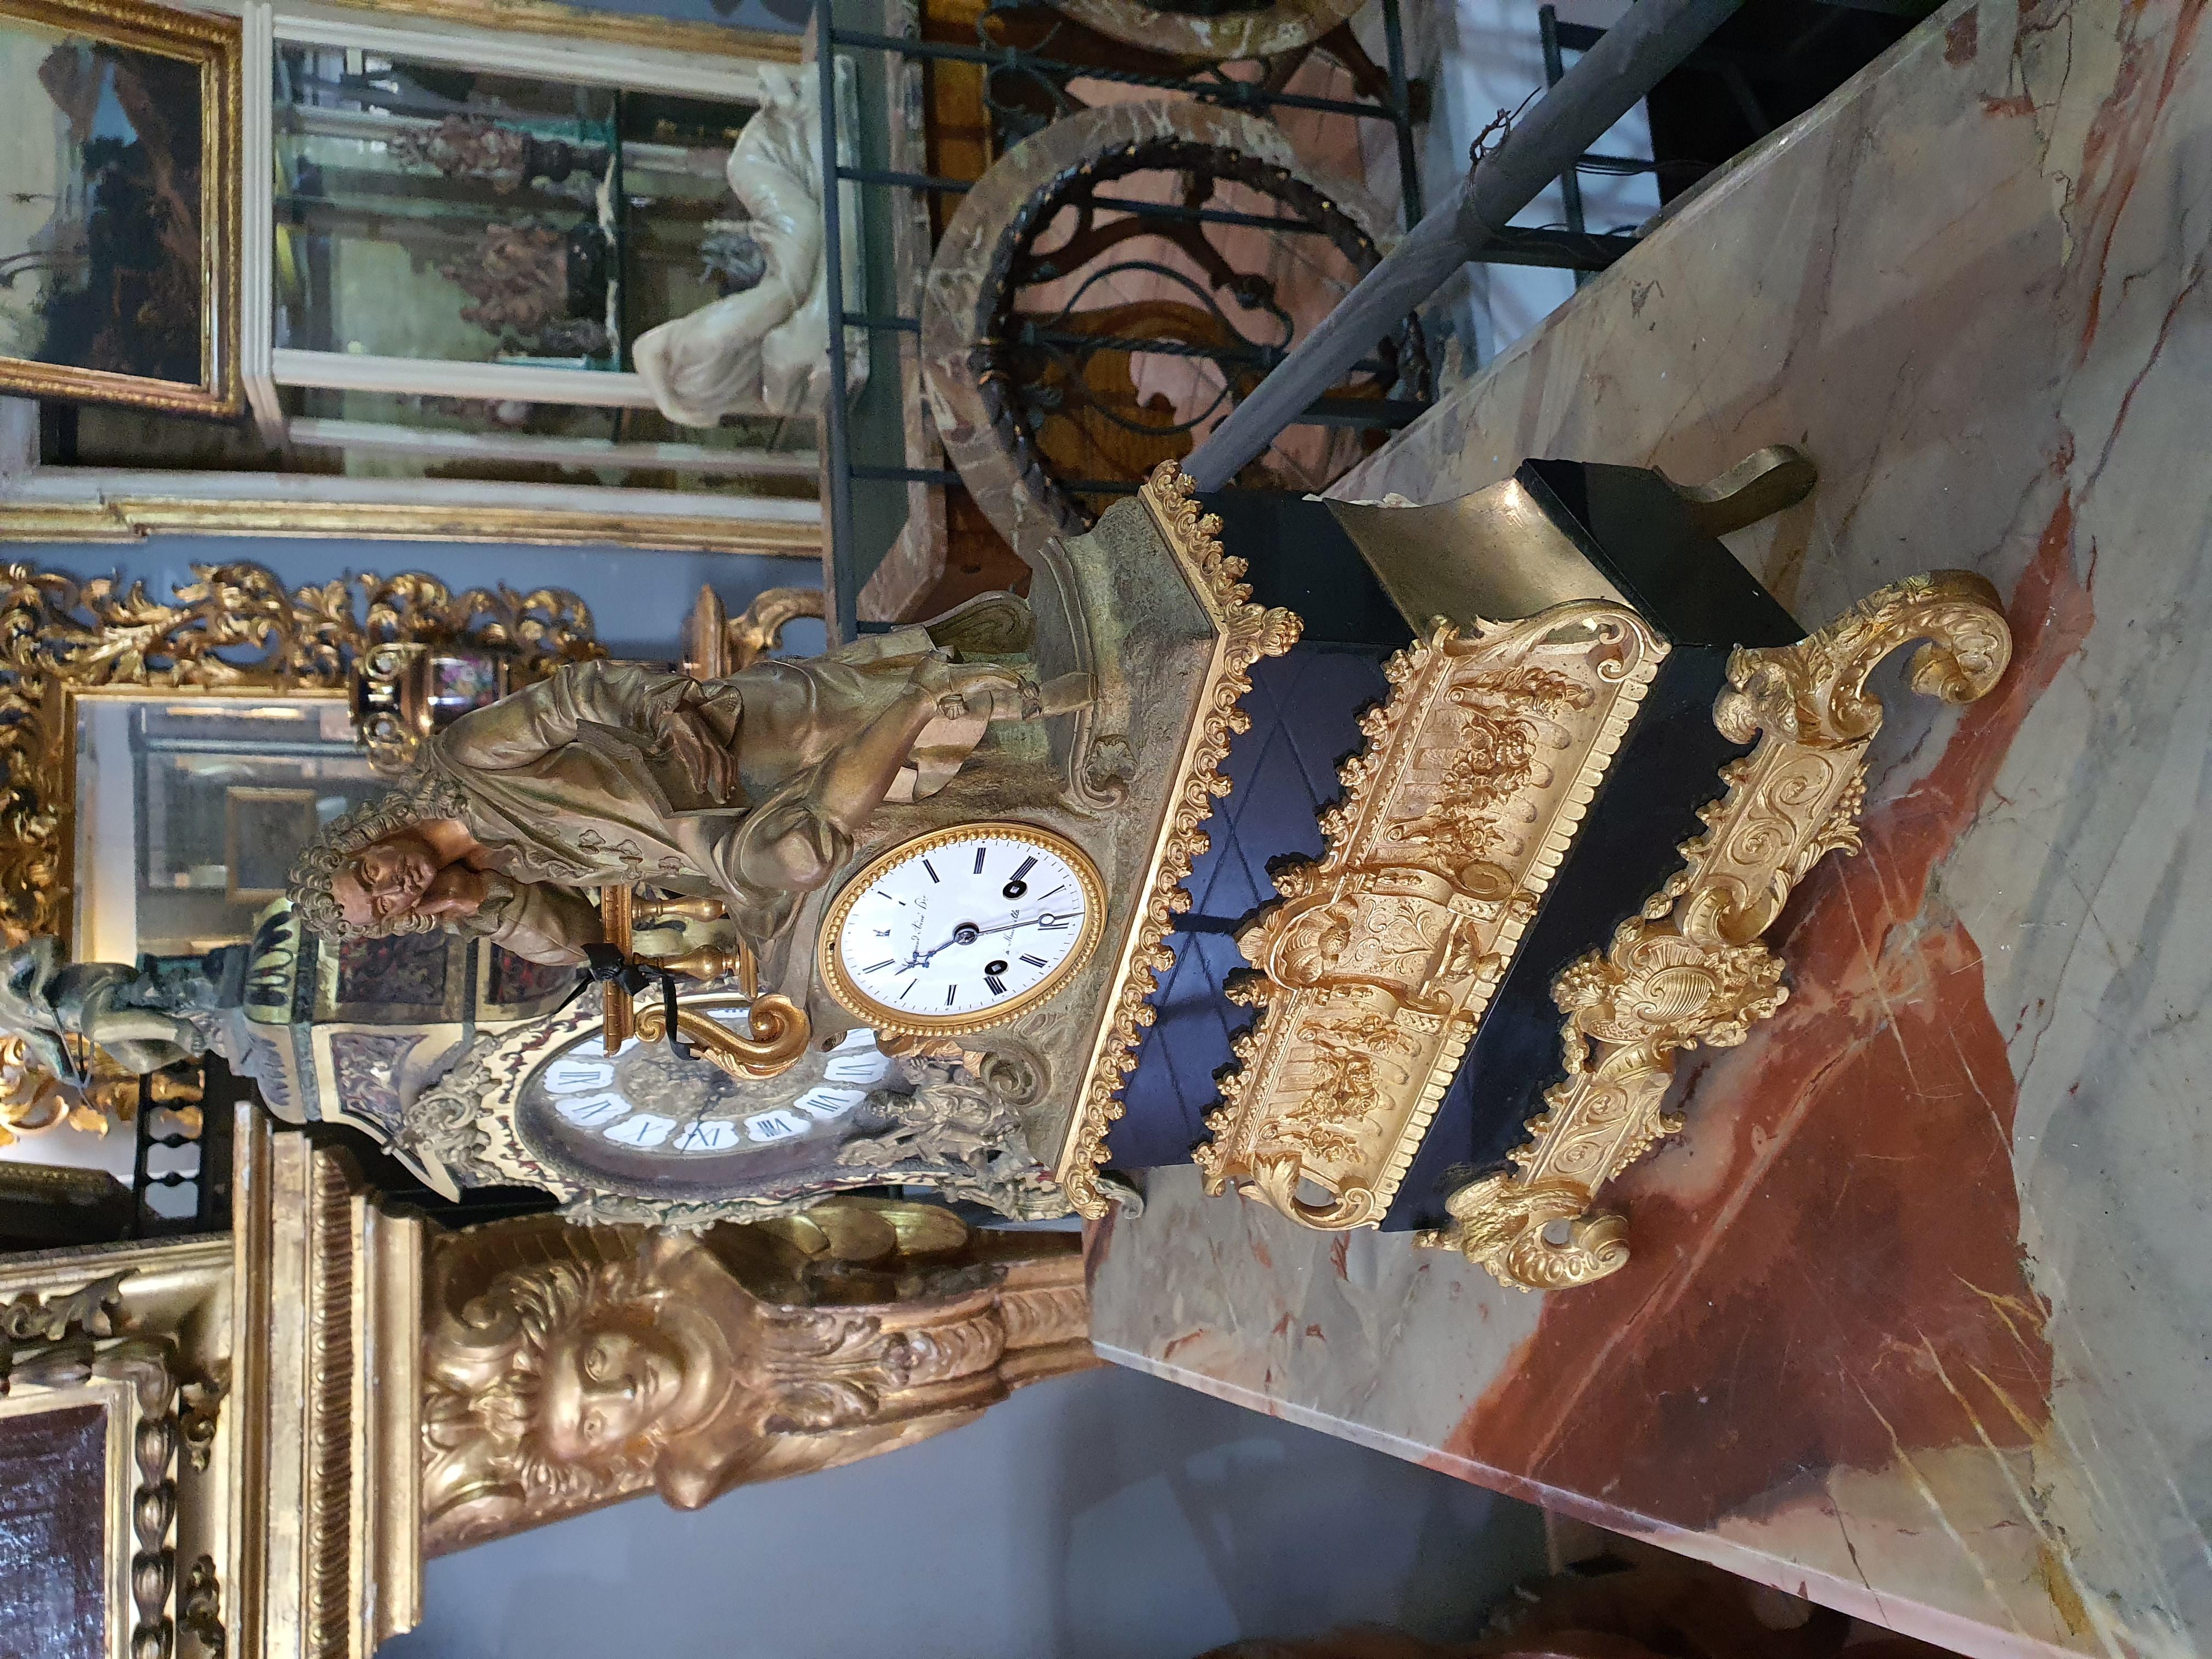 Horloge composée d'une structure à plusieurs ordres, alternant marbre noir et bronze doré, au sommet de laquelle se trouve la sculpture en bronze patiné d'un homme plongé dans la lecture, probablement Voltaire. Cadran en émail blanc, chiffres arabes